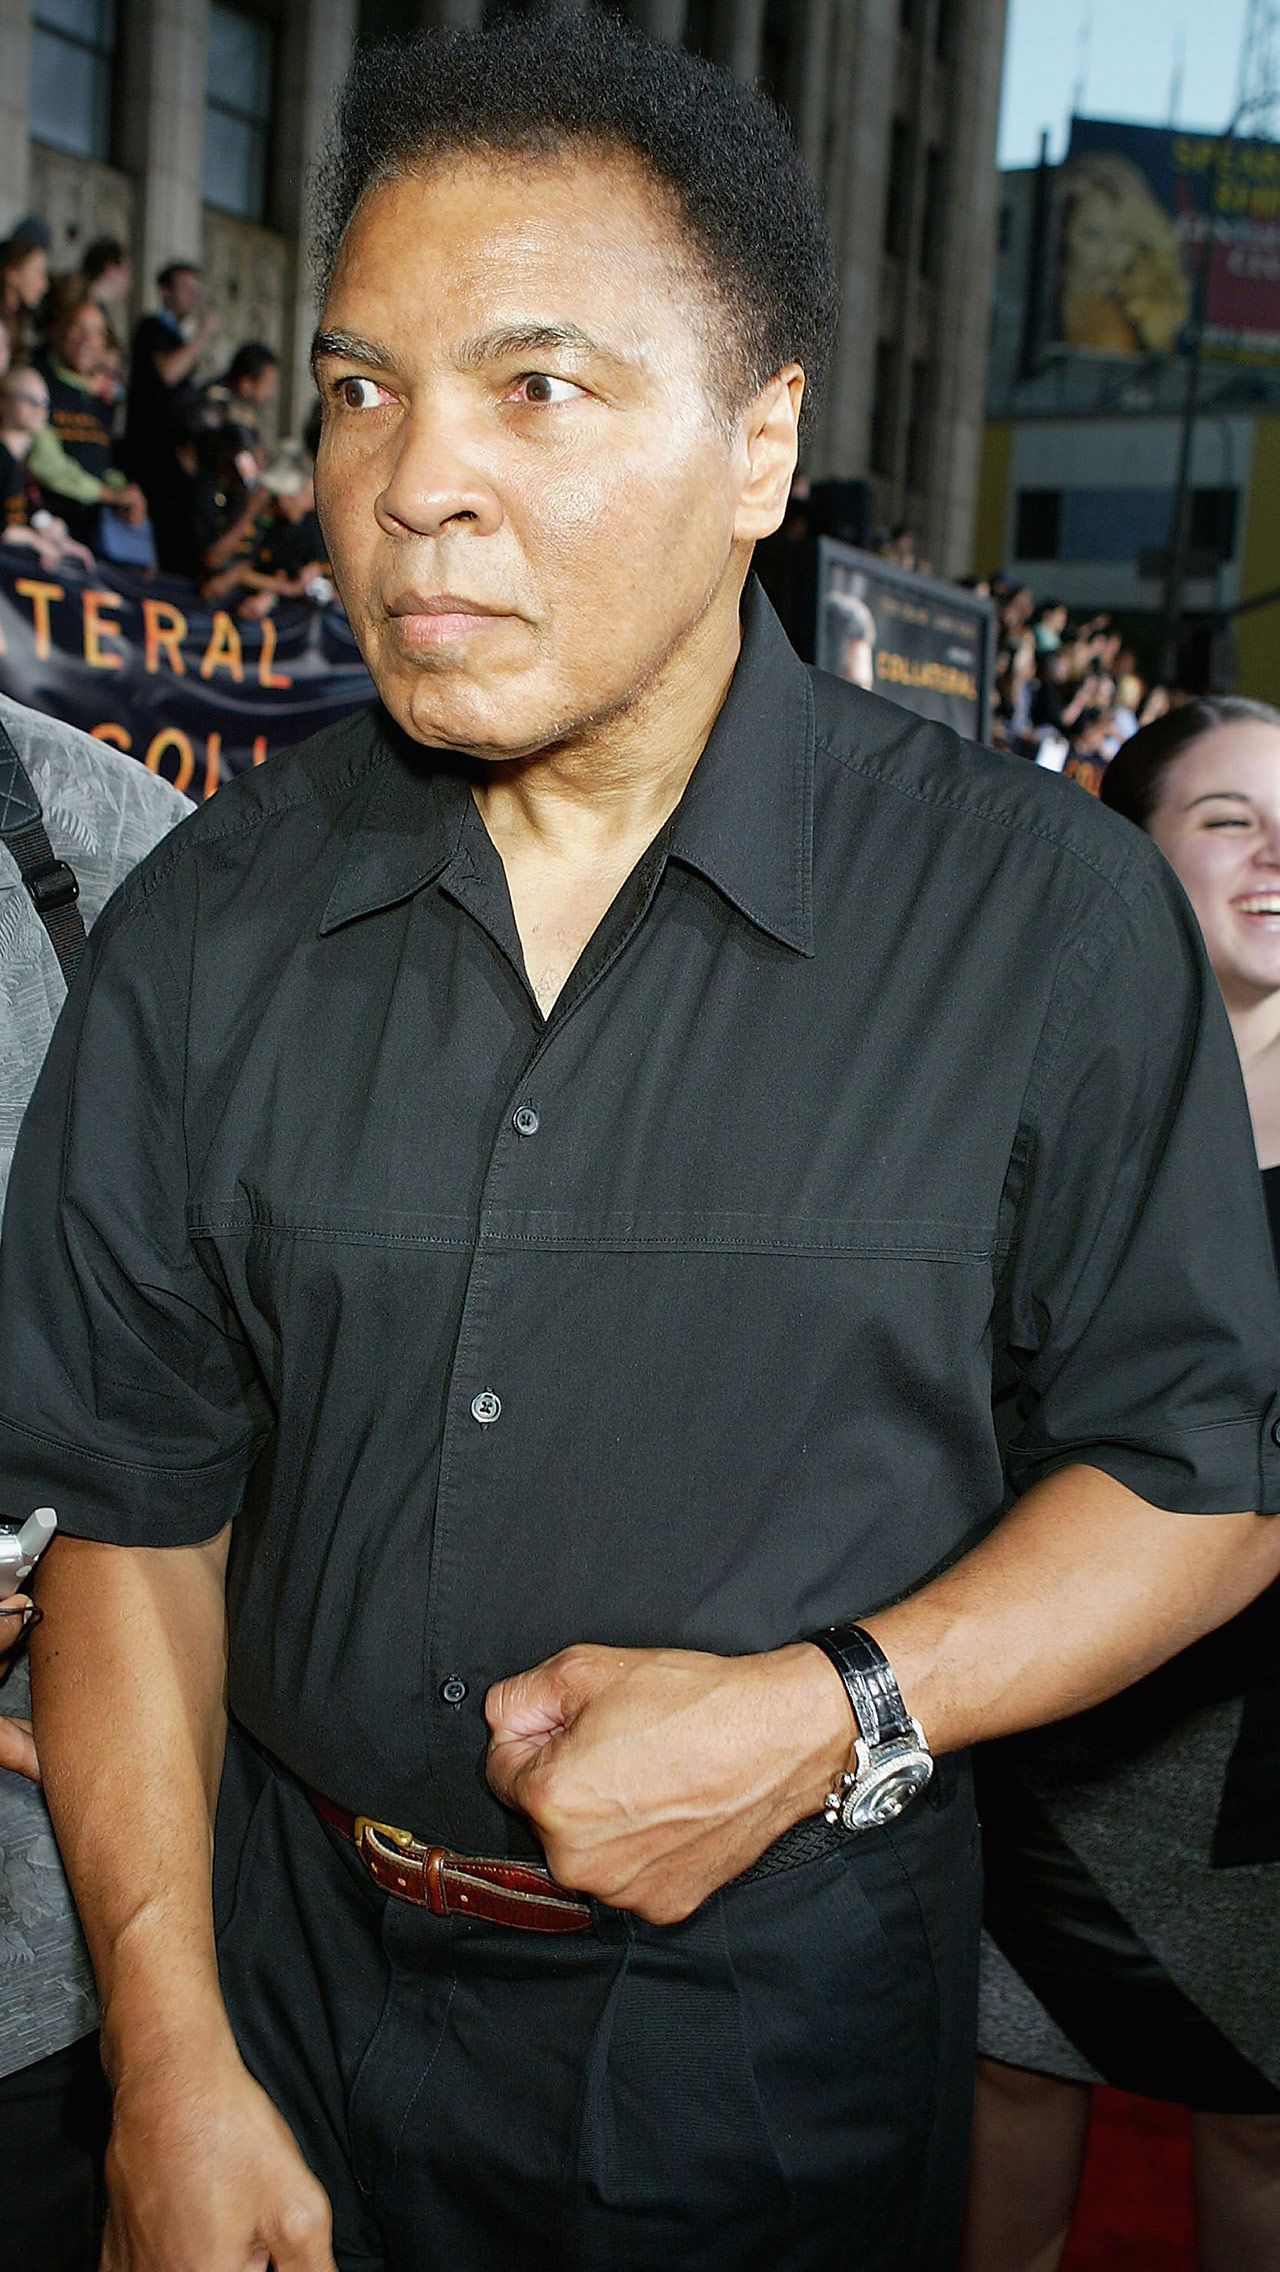 Вне ринга Али считался талантливым музыкантом, дважды номинировавшимся на премию «Грэмми». Он также был актёром и писателем, выпустил две автобиографии.